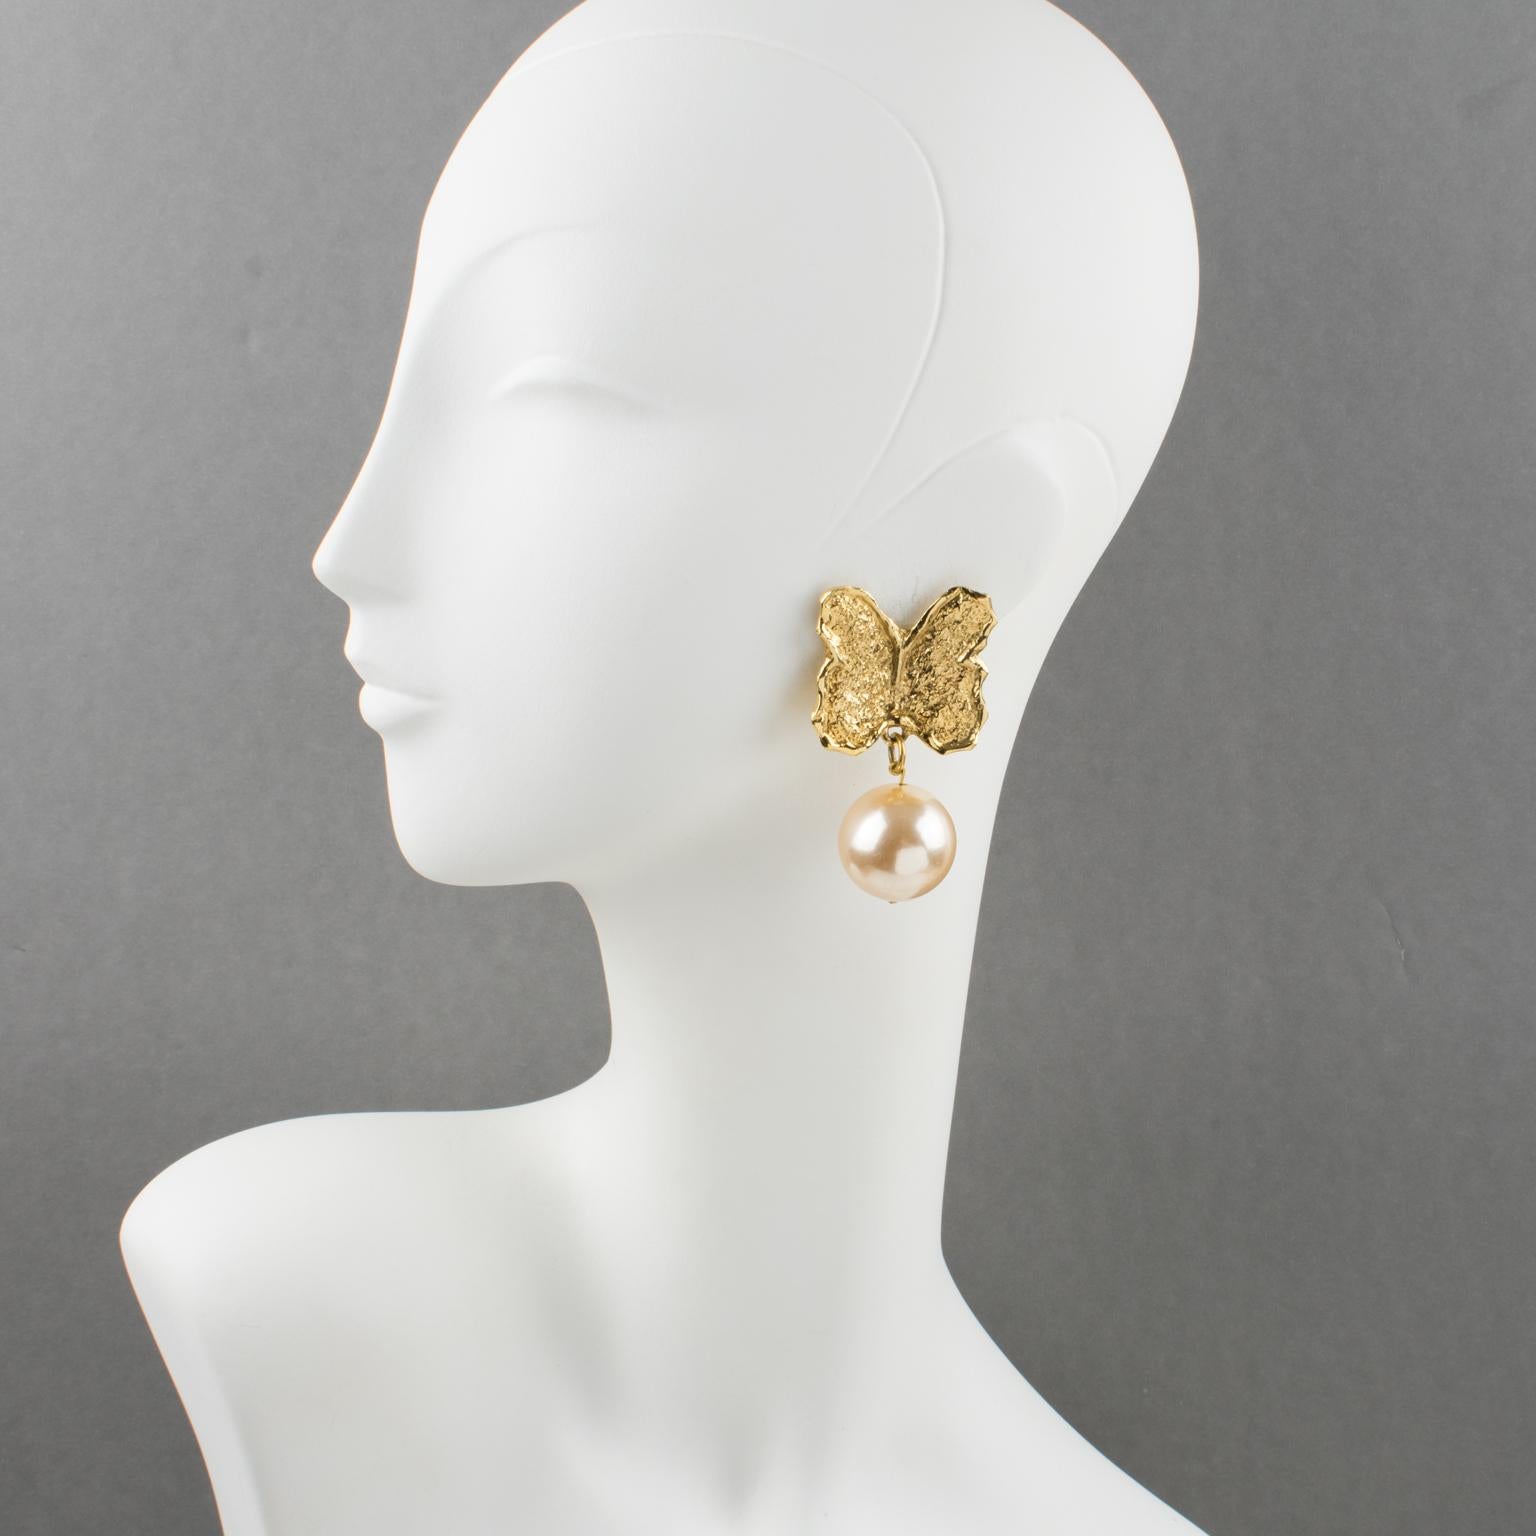 Ces élégantes boucles d'oreilles clipsables Guy Laroche Paris présentent une forme pendante surdimensionnée avec un papillon en métal doré sculpté et texturé, orné d'une impressionnante imitation de perle de couleur rose poudré. La signature gravée